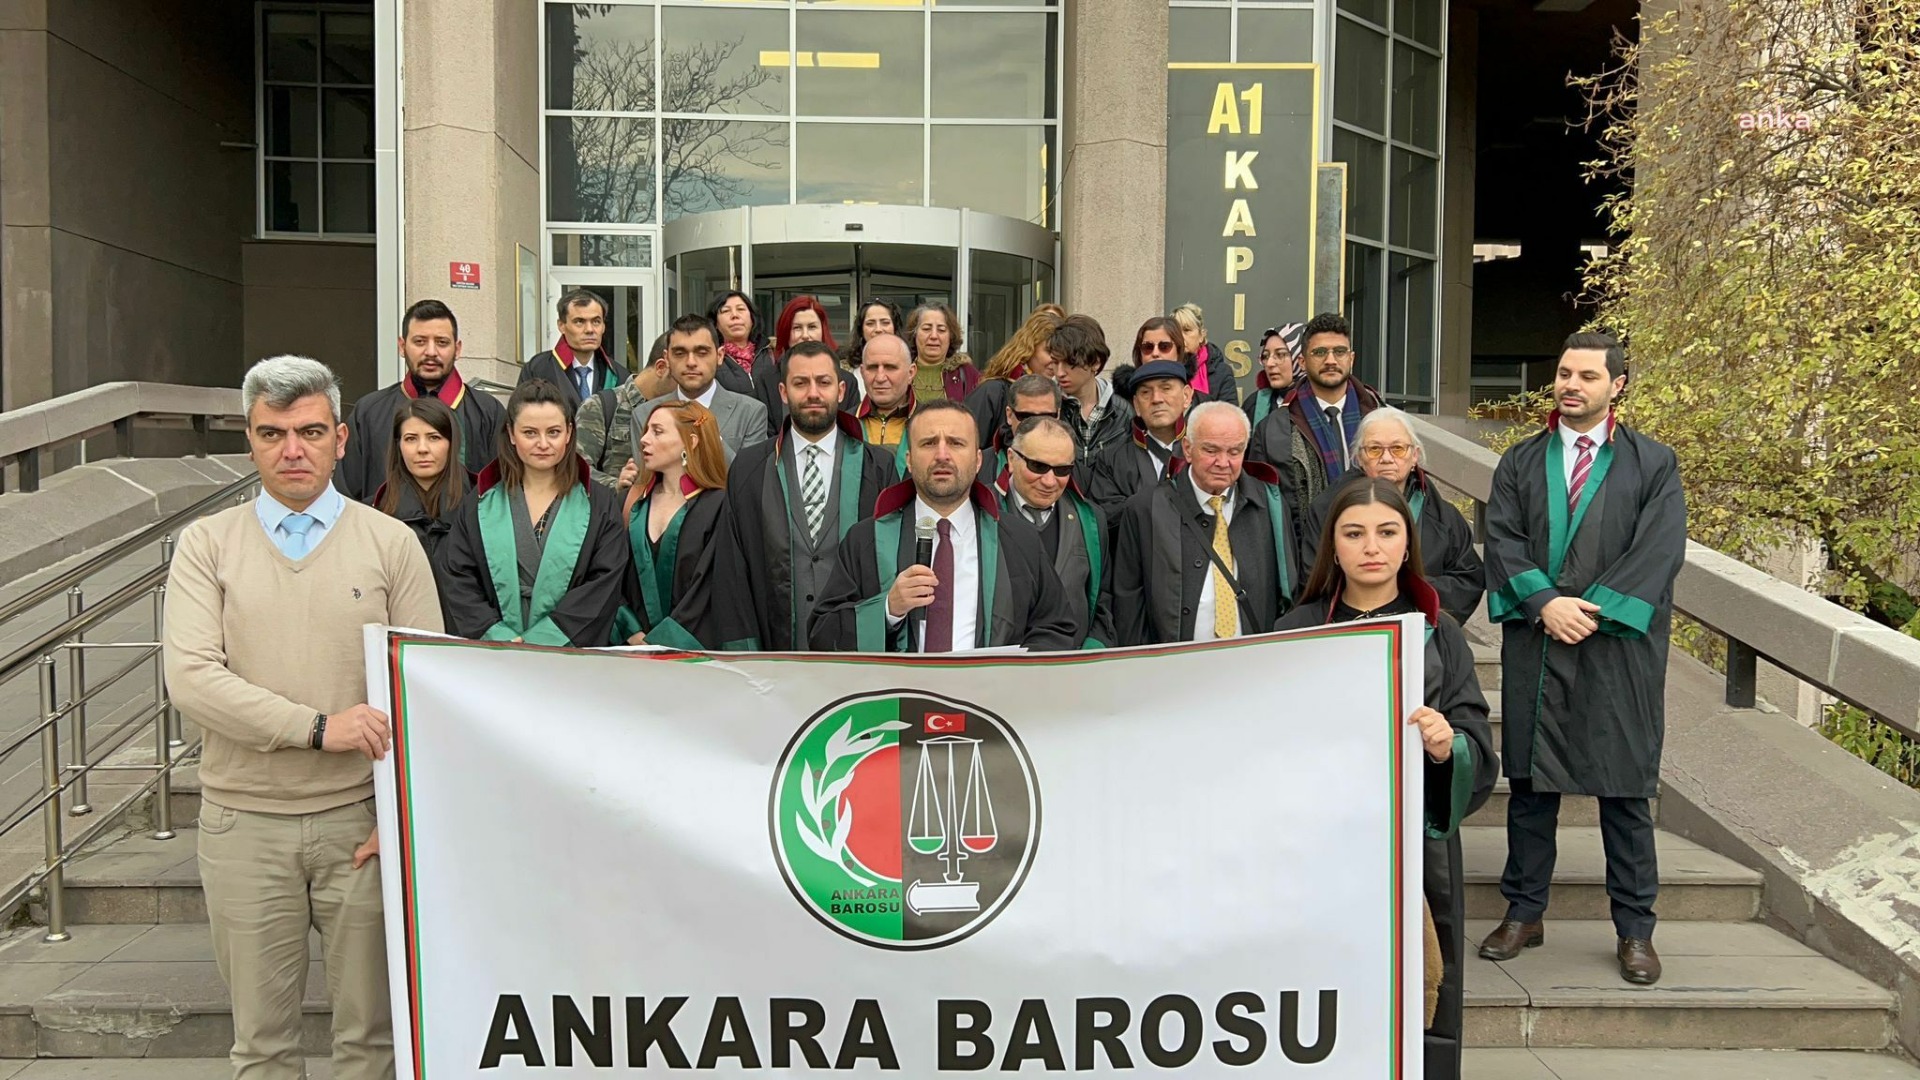 Ankara Barosu’ndan 3 Aralık Dünya Engelliler Günü açıklaması: Farkında olalım, anlayalım ve hep beraber yapıp birlikte yaşayalım